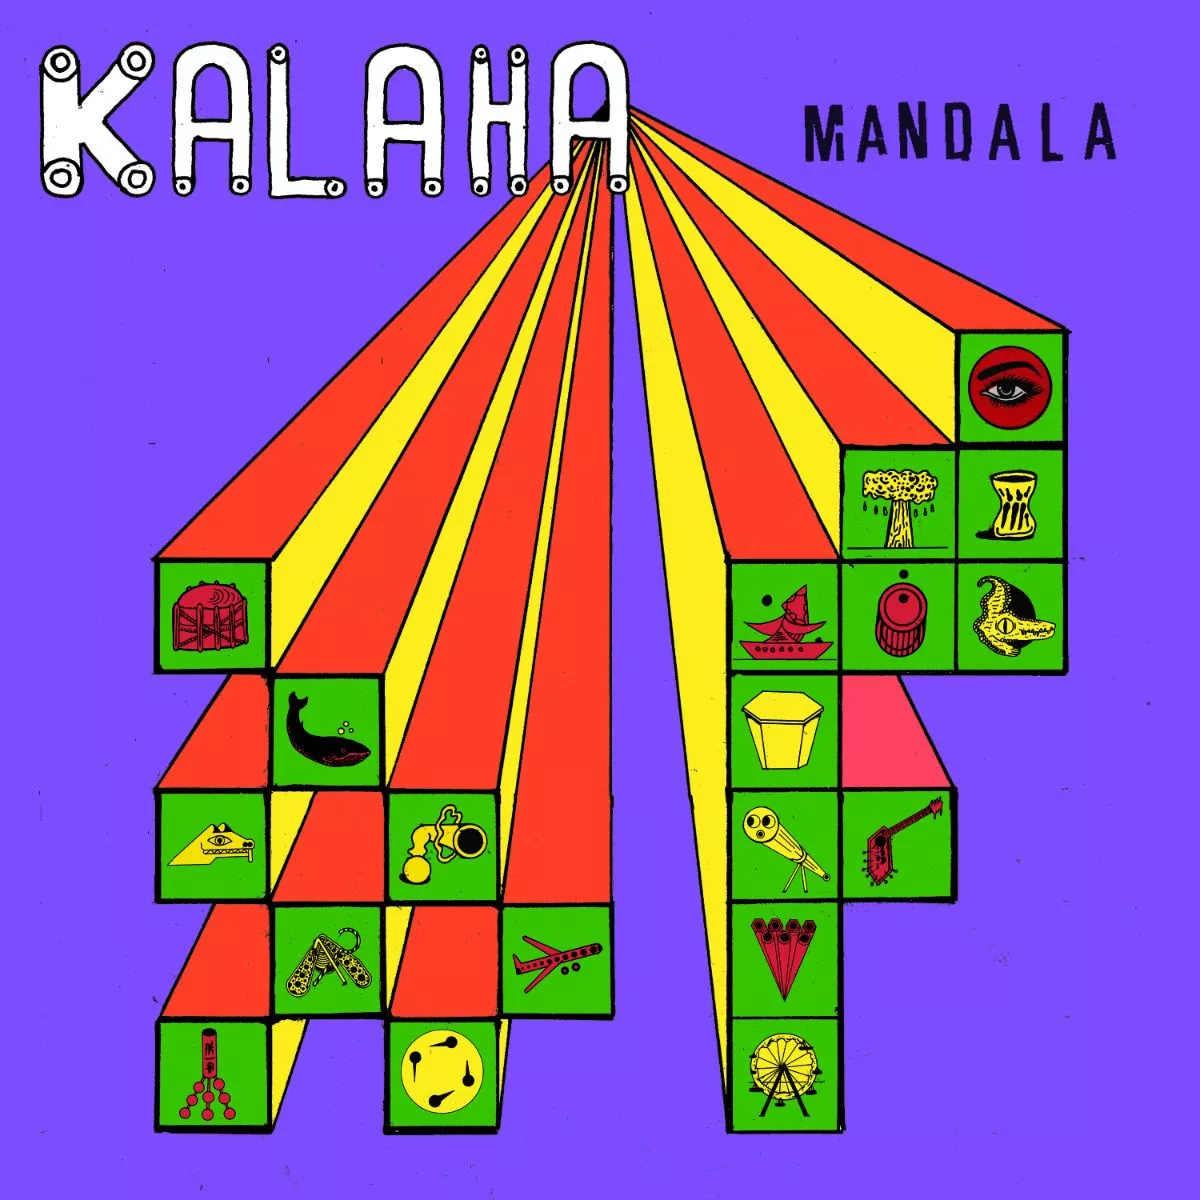 Mandala - Kalaha